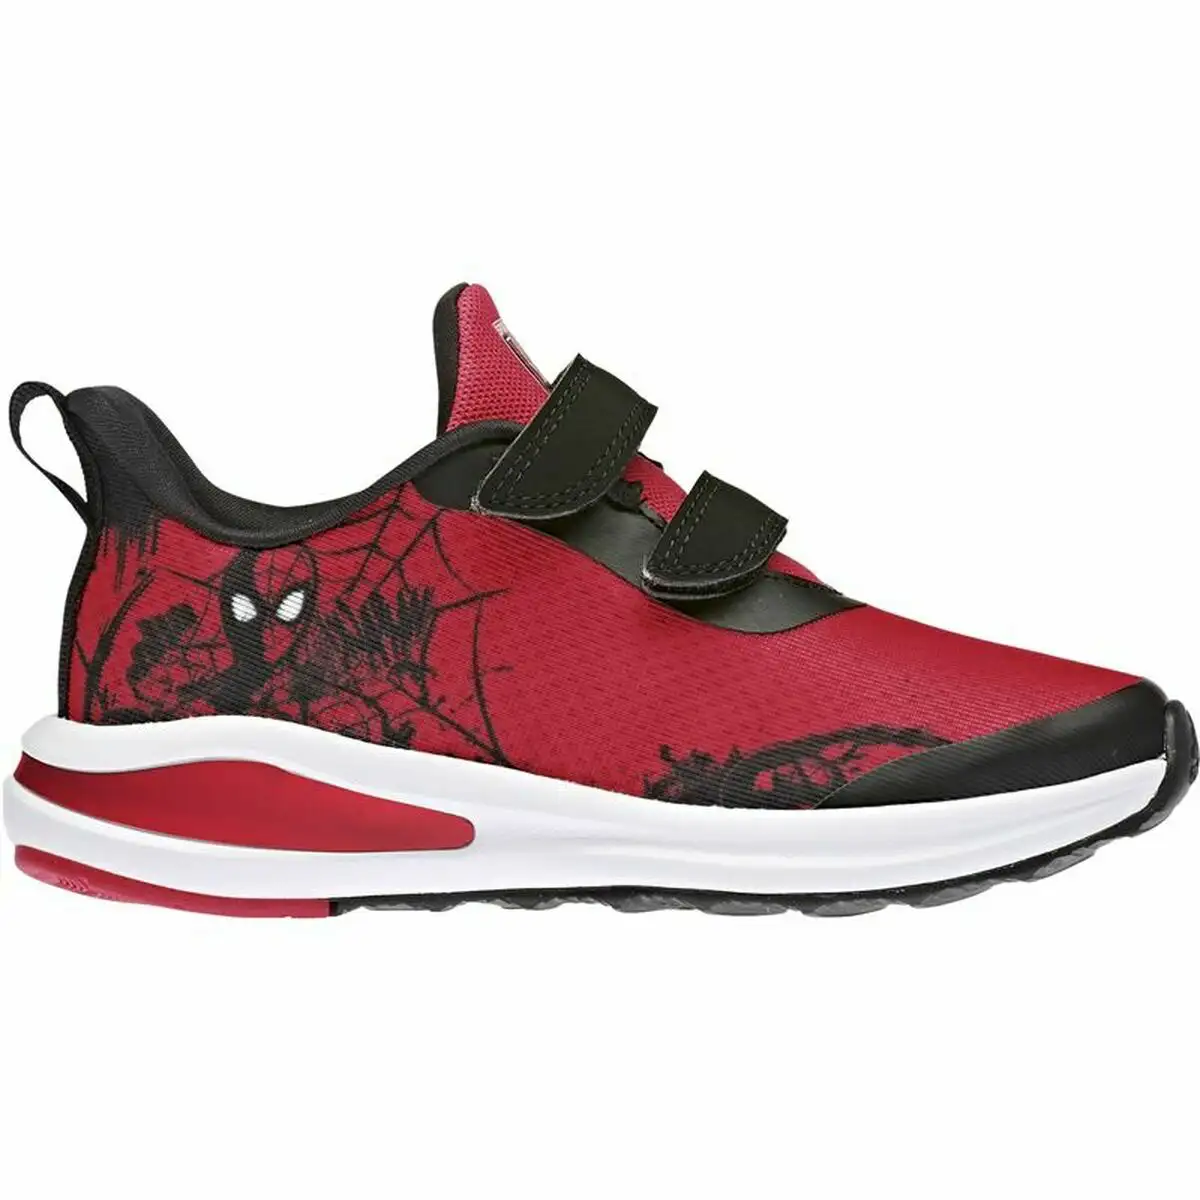 Chaussures de sport pour enfants adidas x marvel spiderman rouge_6742. DIAYTAR SENEGAL - Où Choisir Rime avec Qualité. Découvrez notre sélection soigneusement conçue et choisissez des articles qui incarnent l'excellence et l'innovation.